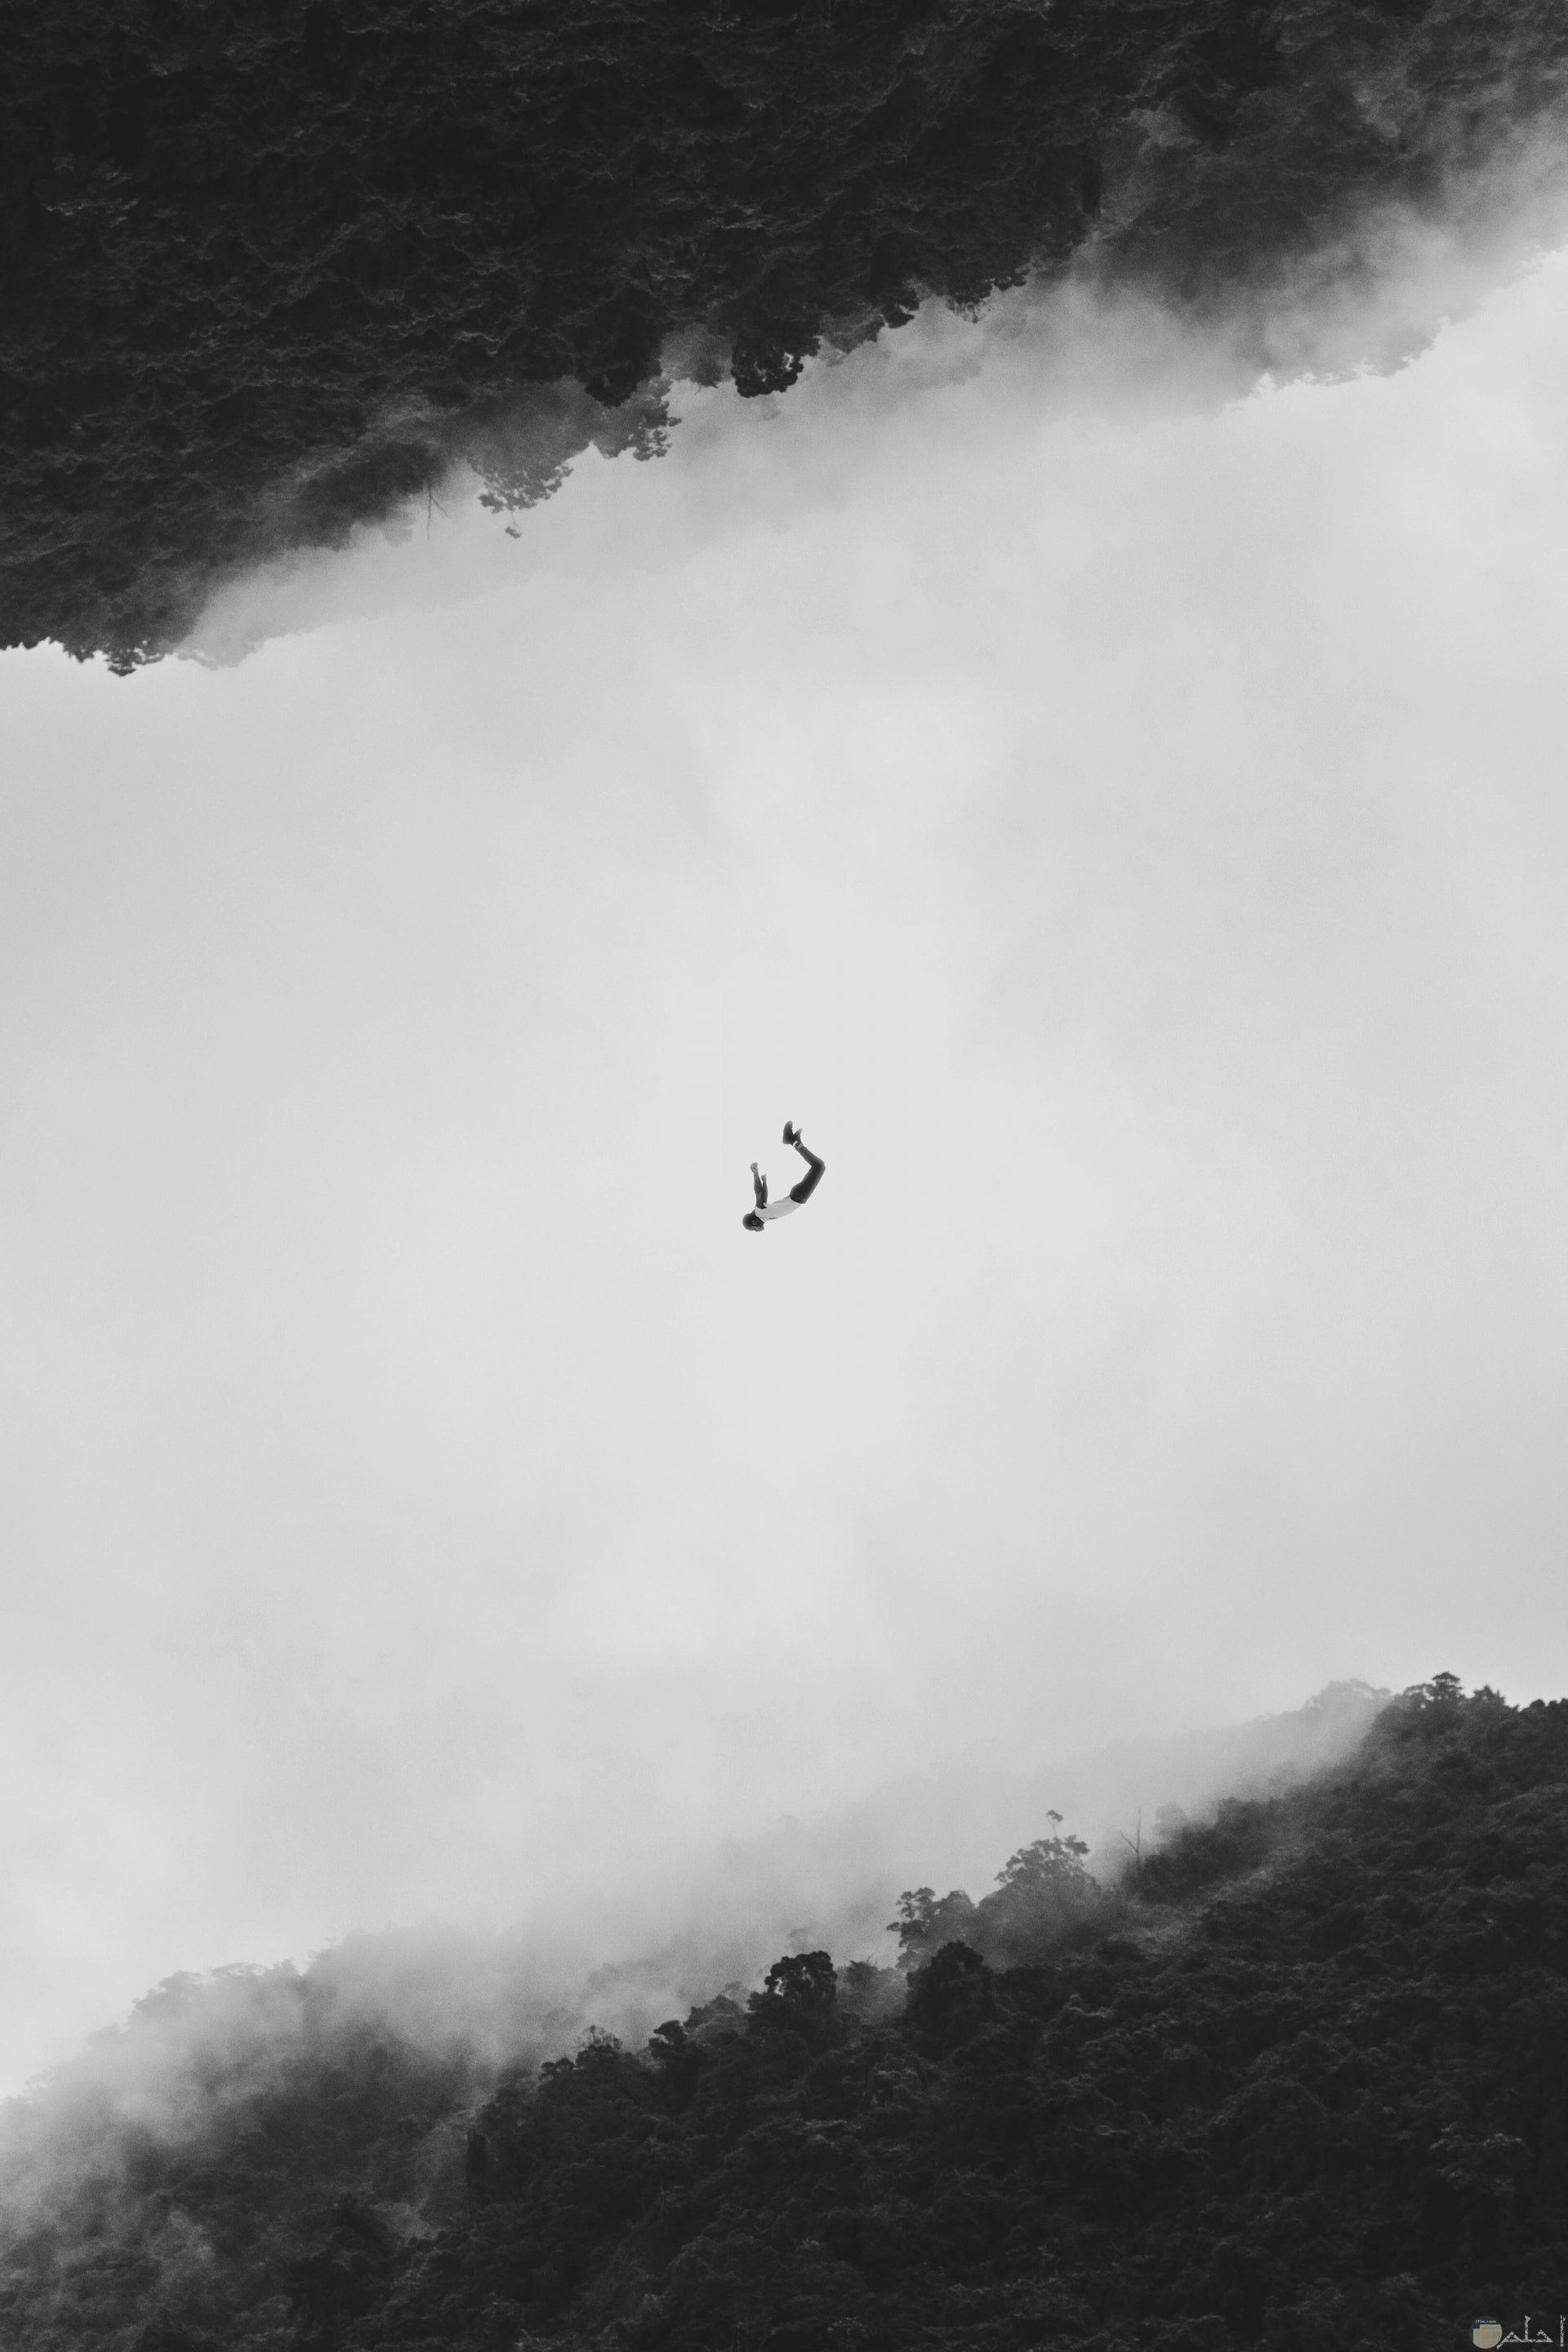 صورة مميزة بالأبيض والأسود لغابة وإنعكاسها أعلي الصورة ورجل معلق في الهواء